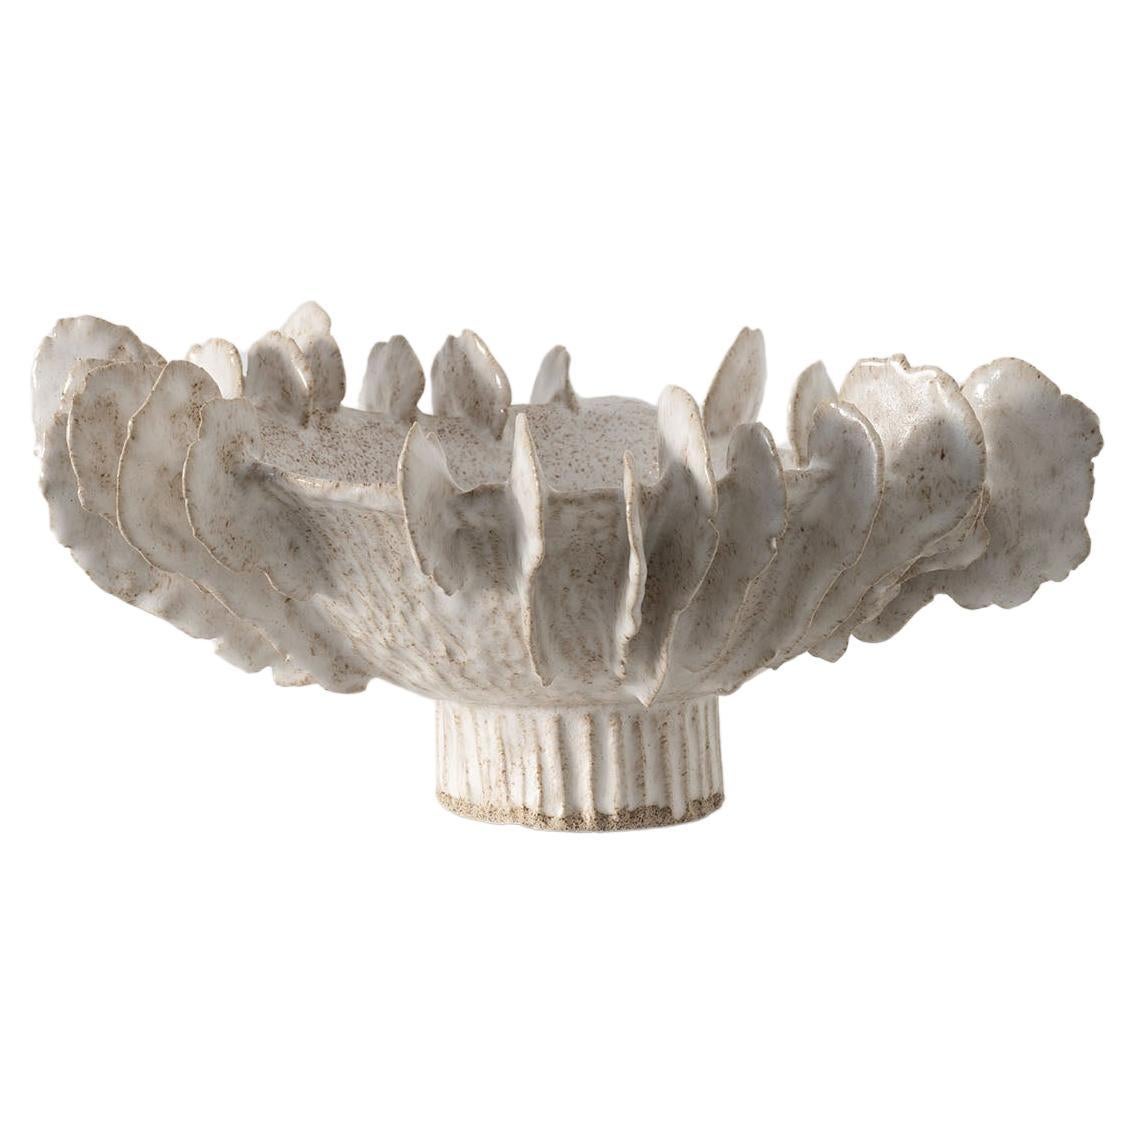 Lamella-Schale aus glasierter Keramik mit Glasintarsien von Trish DeMasi